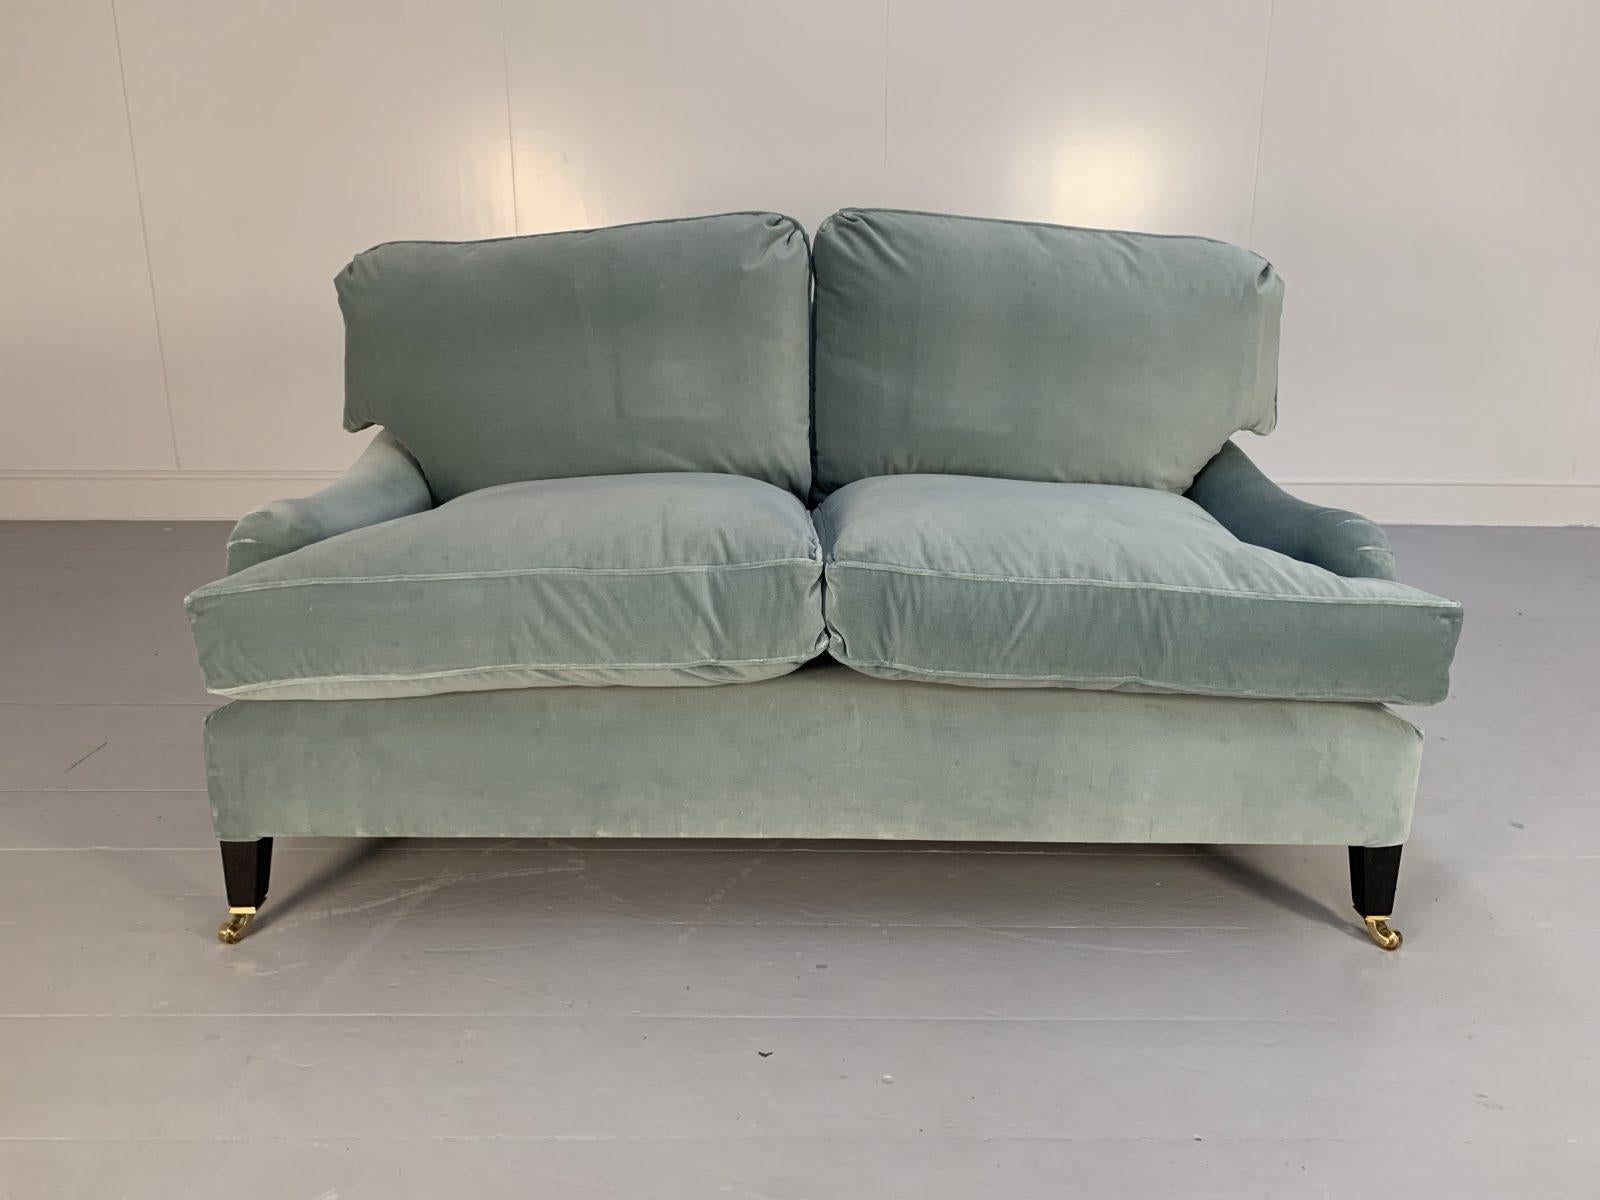 Bonjour les amis, et bienvenue à une nouvelle offre incontournable de Lord Browns Furniture, la première source de canapés et de chaises de qualité au Royaume-Uni.

L'offre proposée à cette occasion est, très probablement, le seul canapé que vous